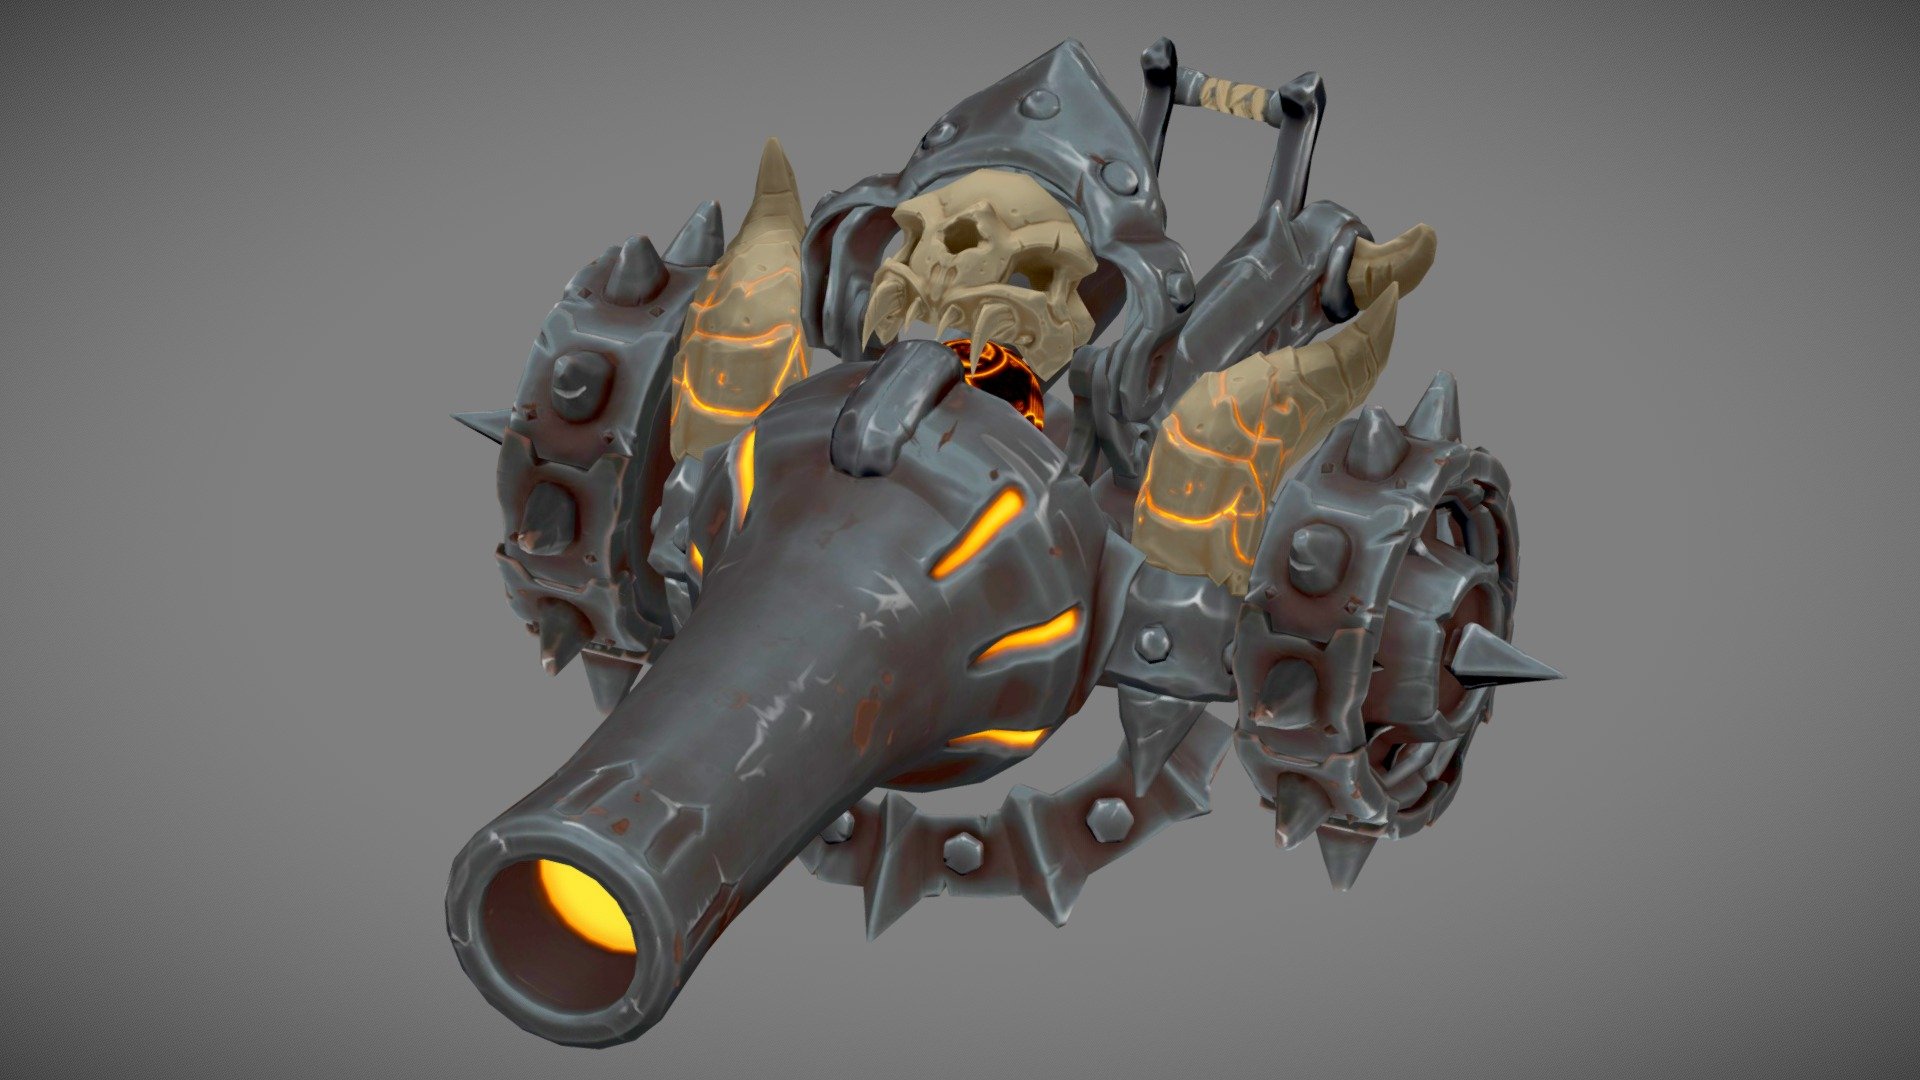 Reference is from a Darksiders concept - Stylized Cannon (Darksiders fan art) - 3D model by Jiggywatt 3d model